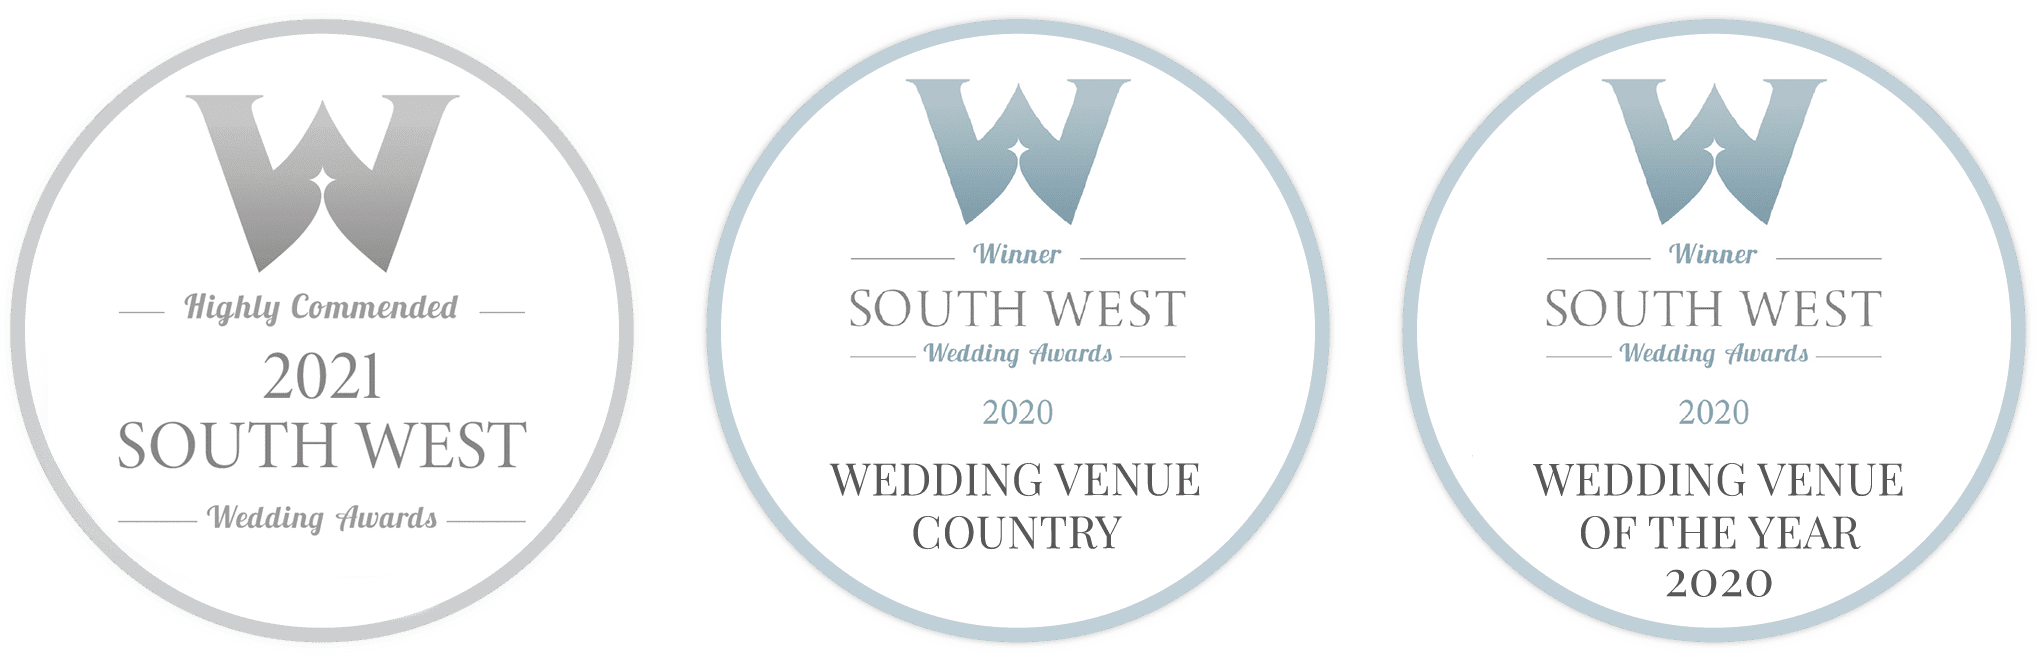 Trenderway Weddings - awards